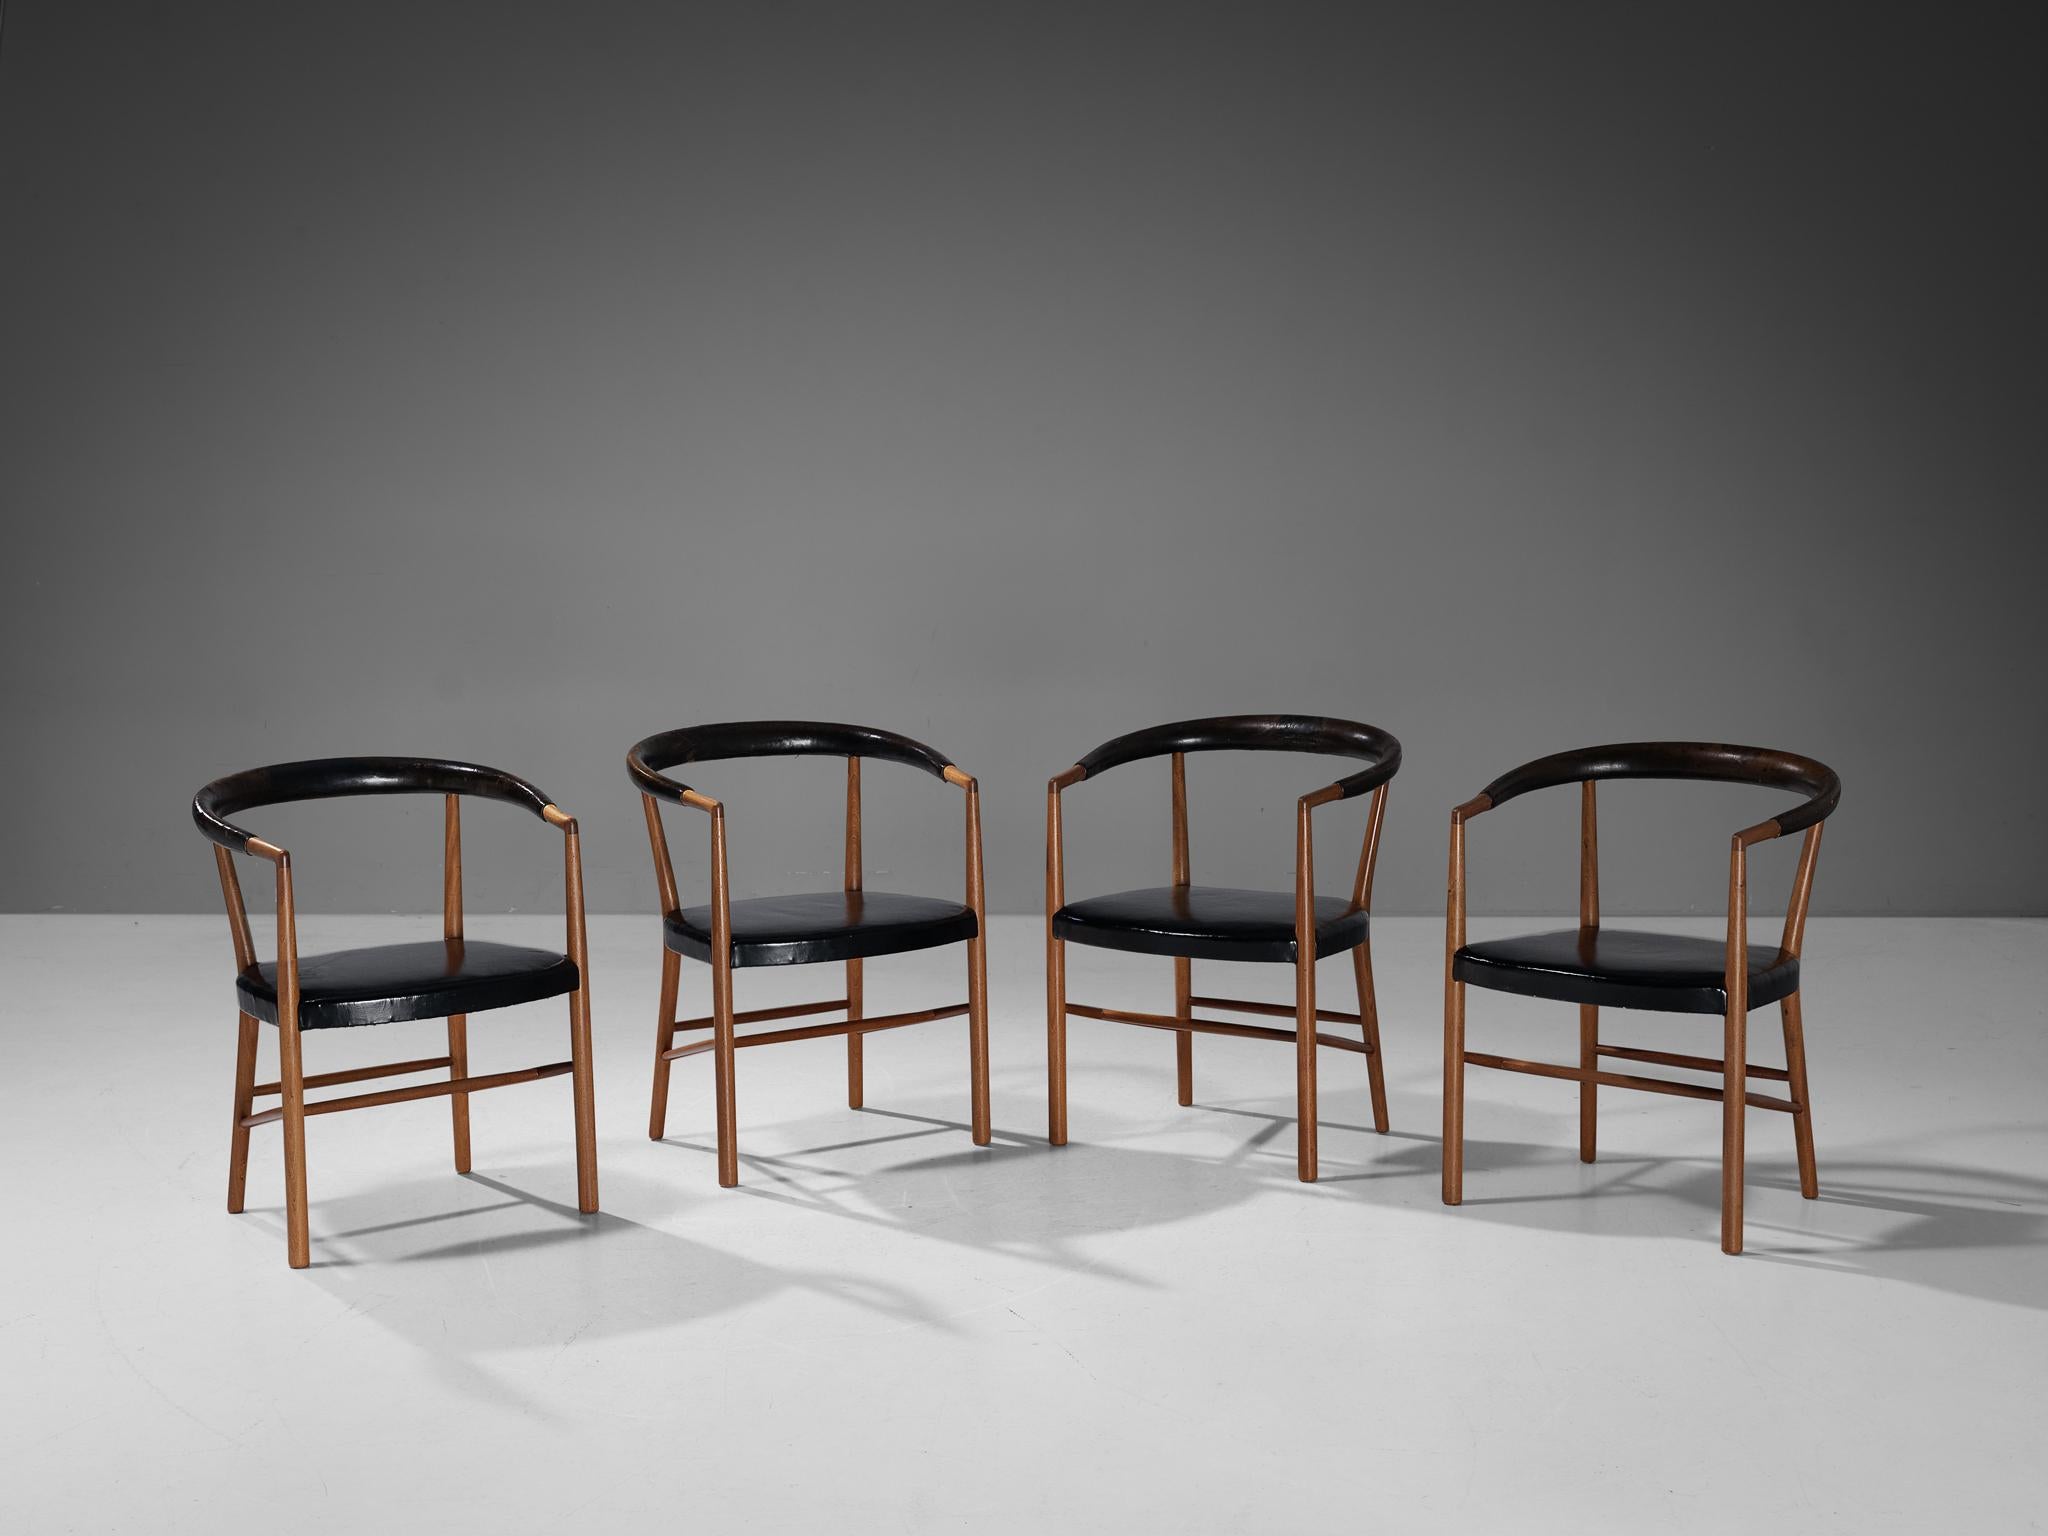 Jabob Kjær pour Jacob Kjær Møbelhaandværk, ensemble de quatre fauteuils 'UN' modèle 'B37', cuir noir d'origine, acajou, Danemark, design 1949, fabriqué 1957.

Superbe ensemble de chaises 